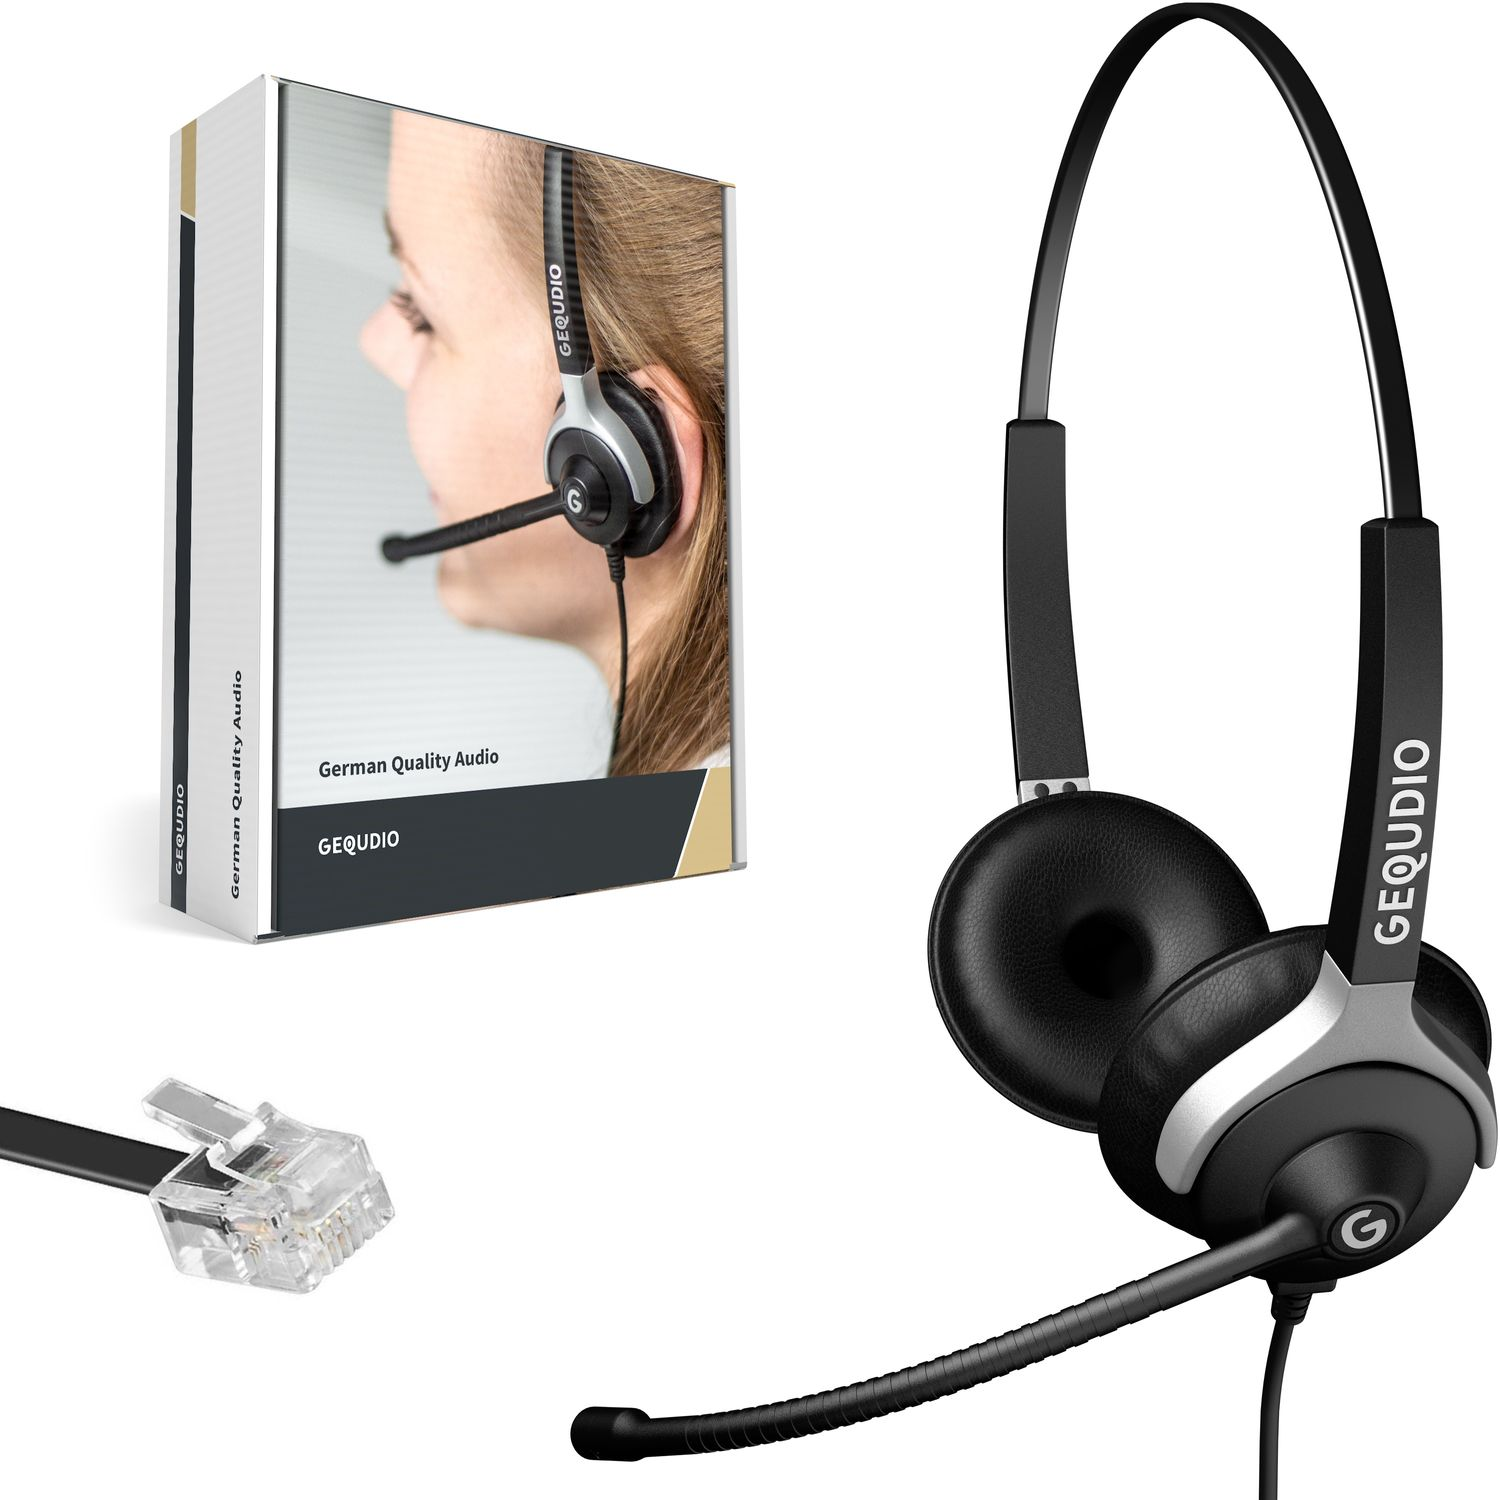 Schwarz Kabel, Headset 2-Ohr Unify für Headset On-ear GEQUDIO mit